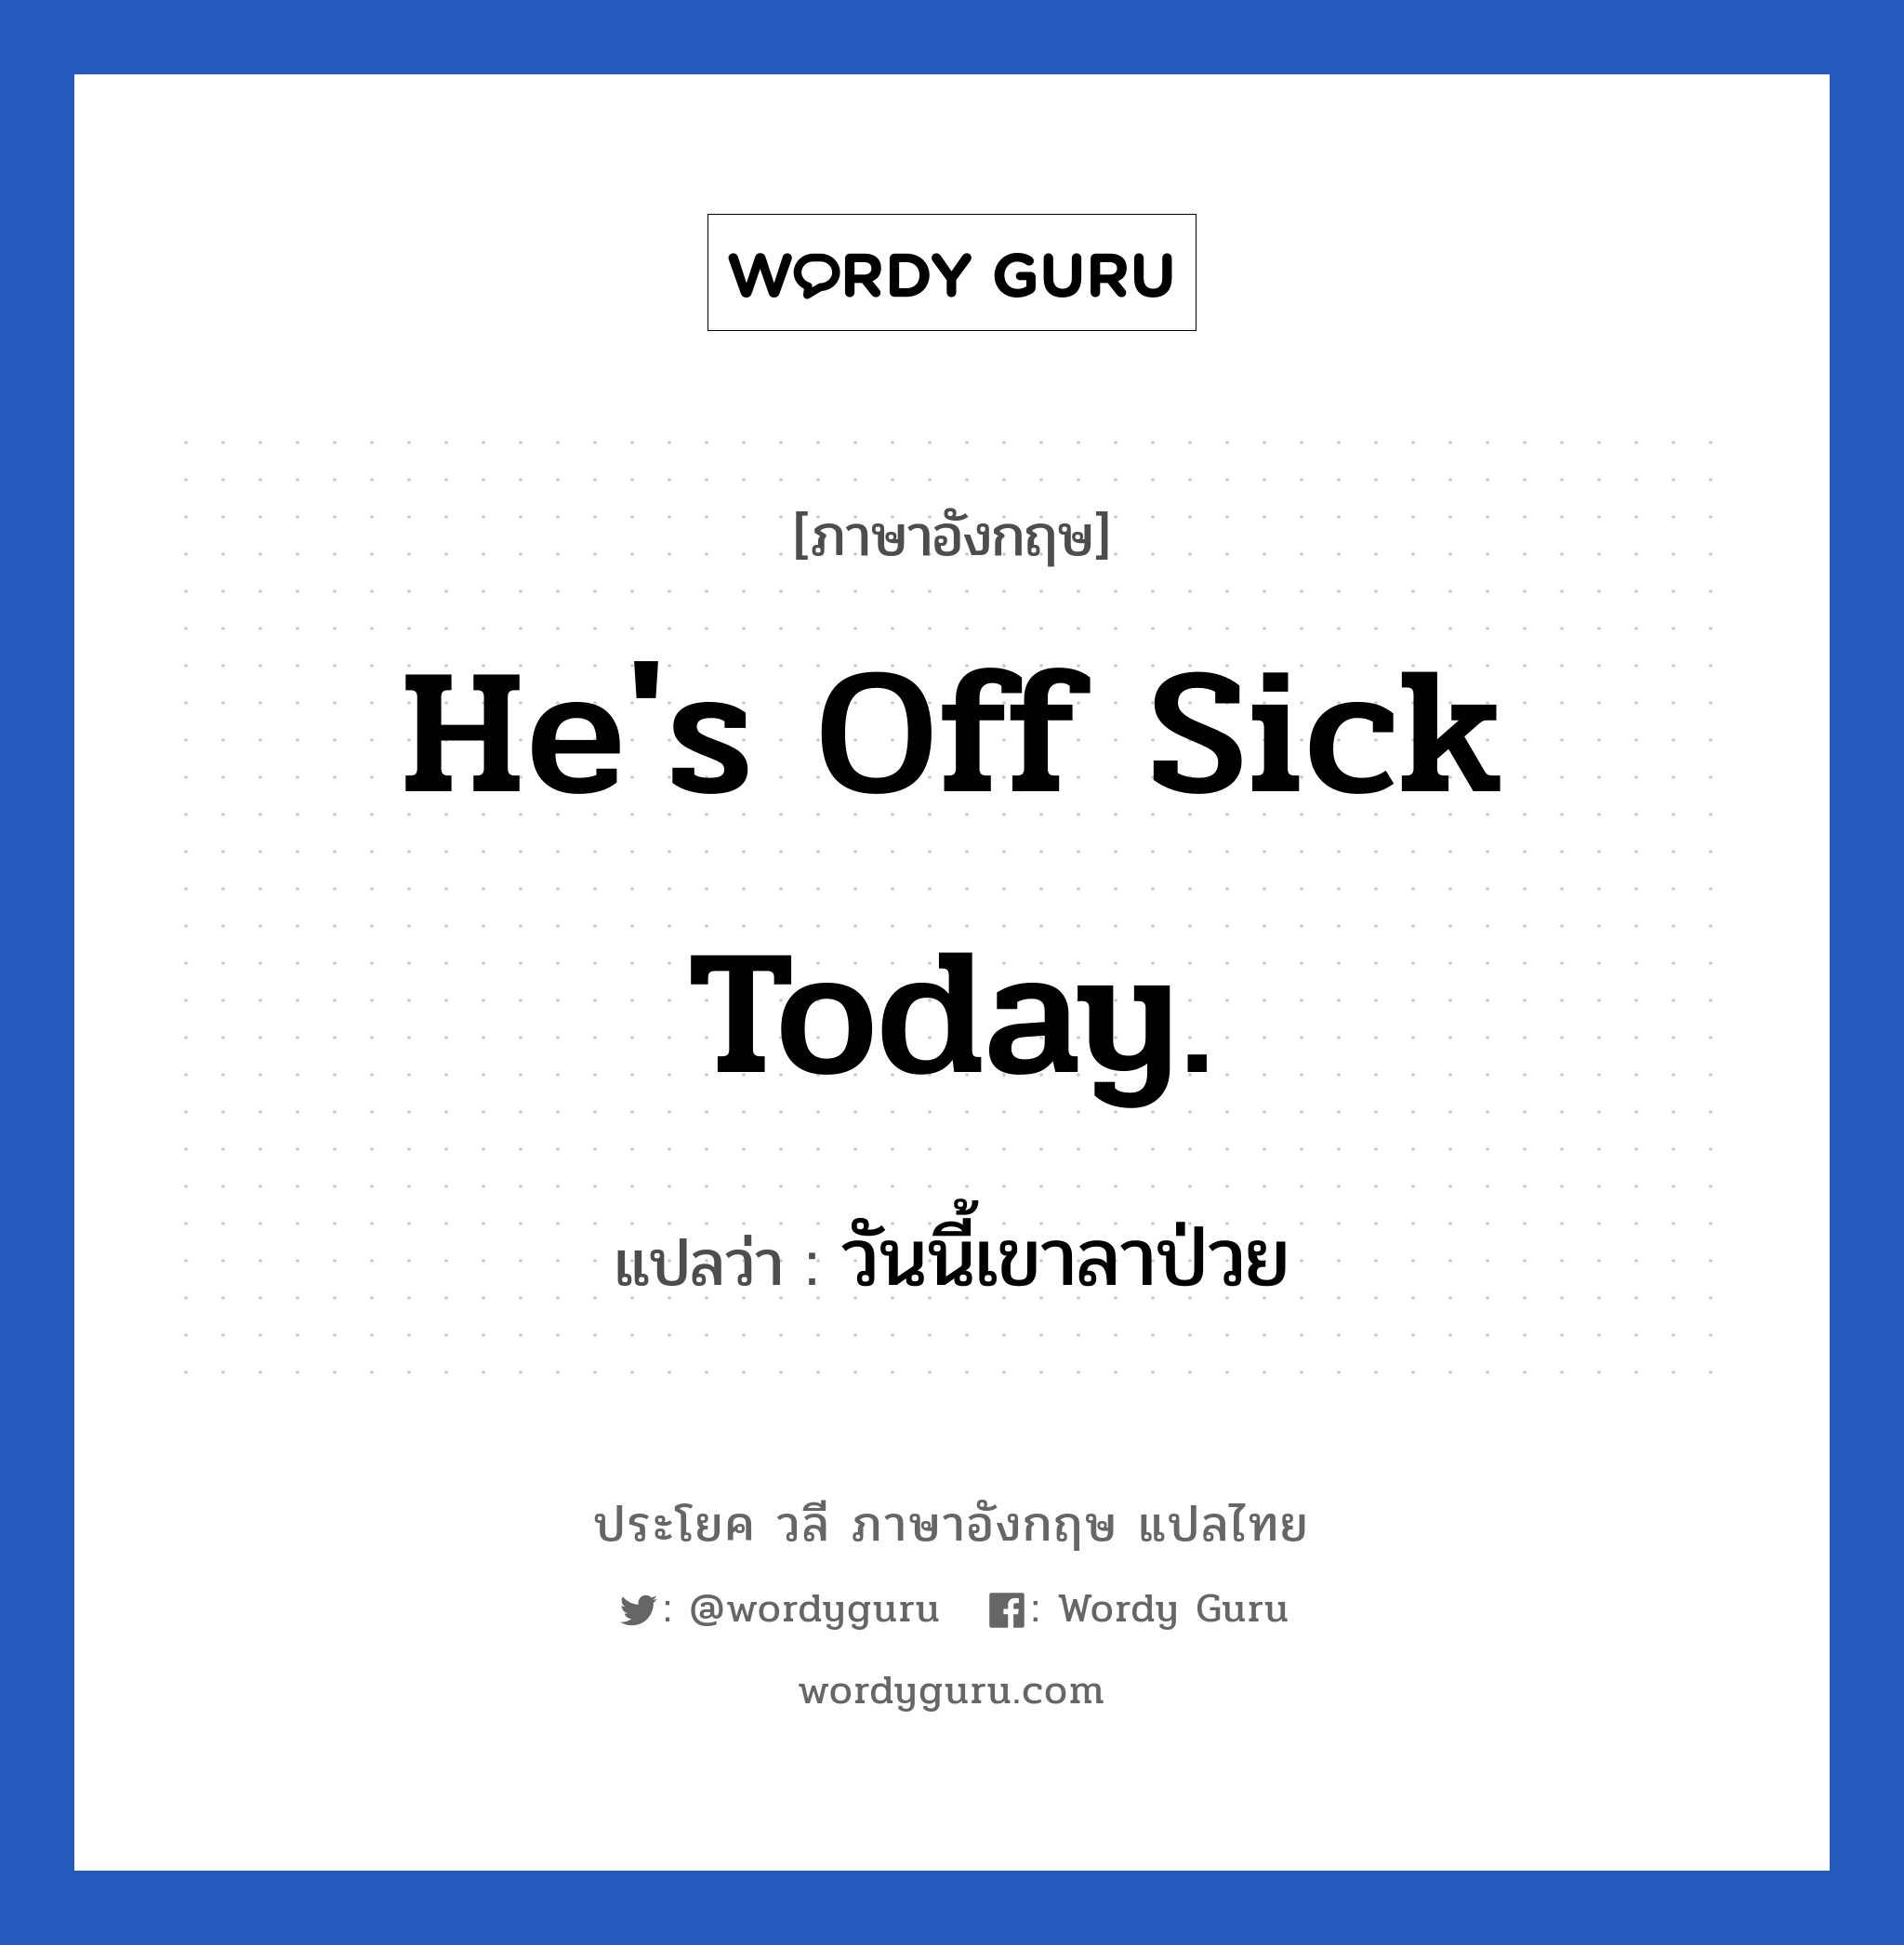 He's off sick today. แปลว่า?, วลีภาษาอังกฤษ He's off sick today. แปลว่า วันนี้เขาลาป่วย